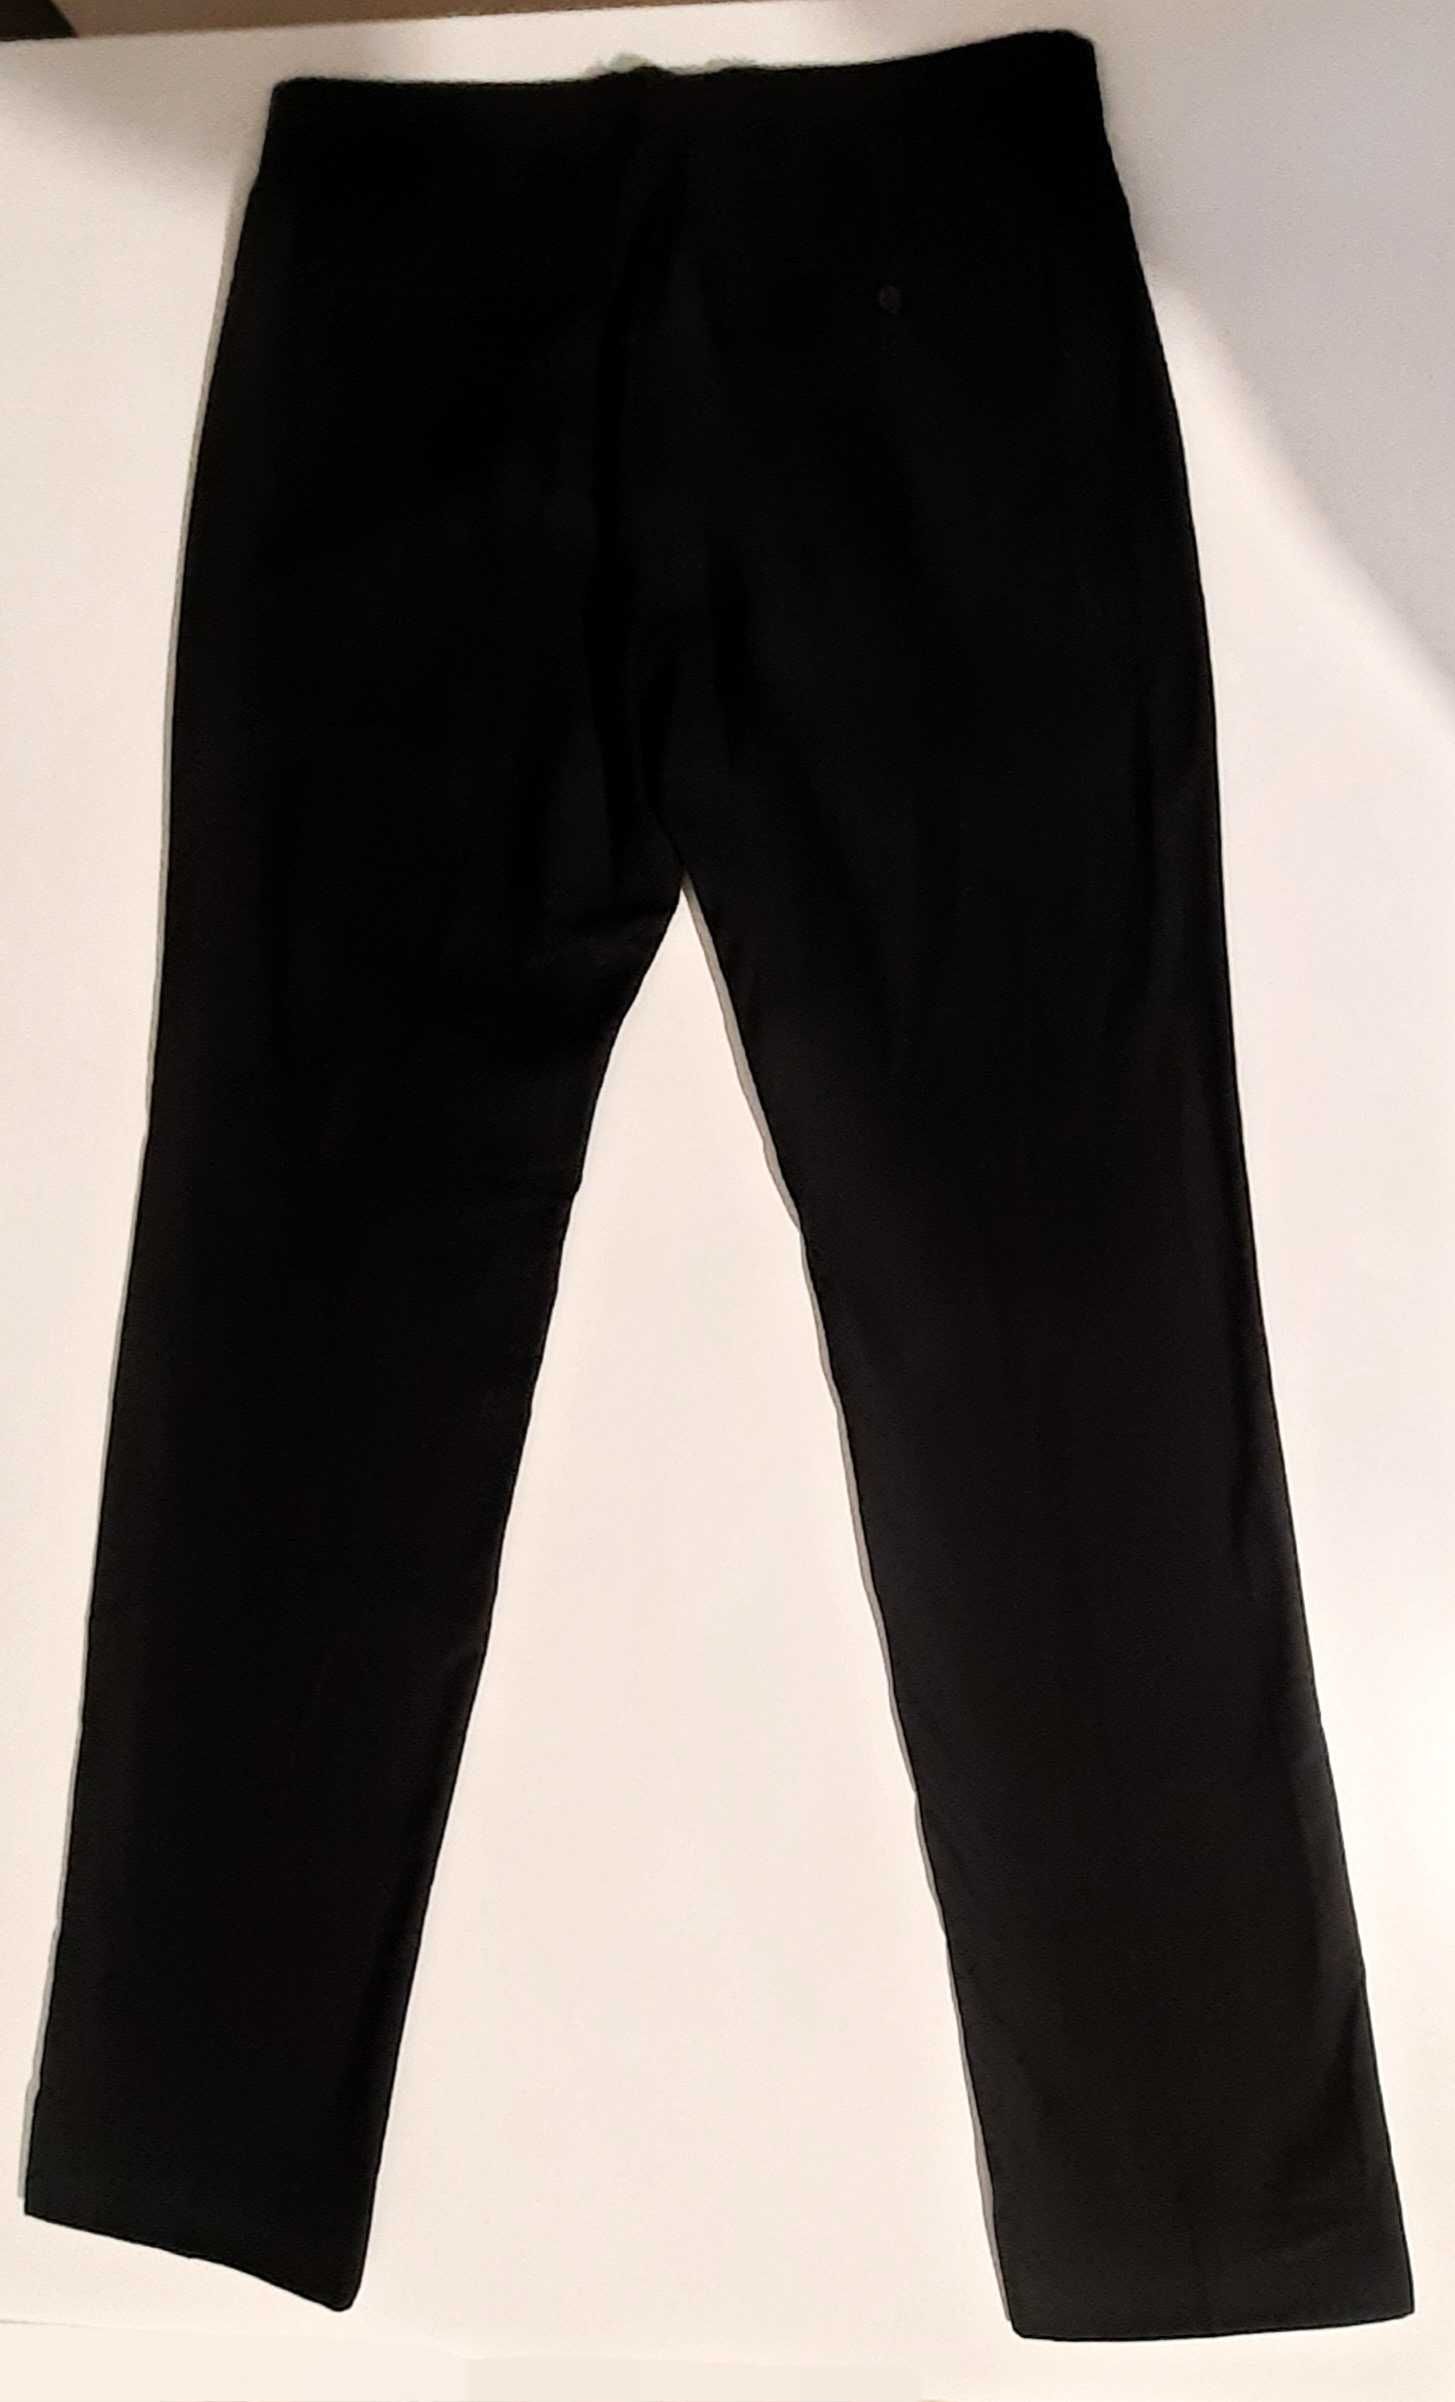 Spodnie eleganckie męskie czarne, Reserved, rozmiar 50